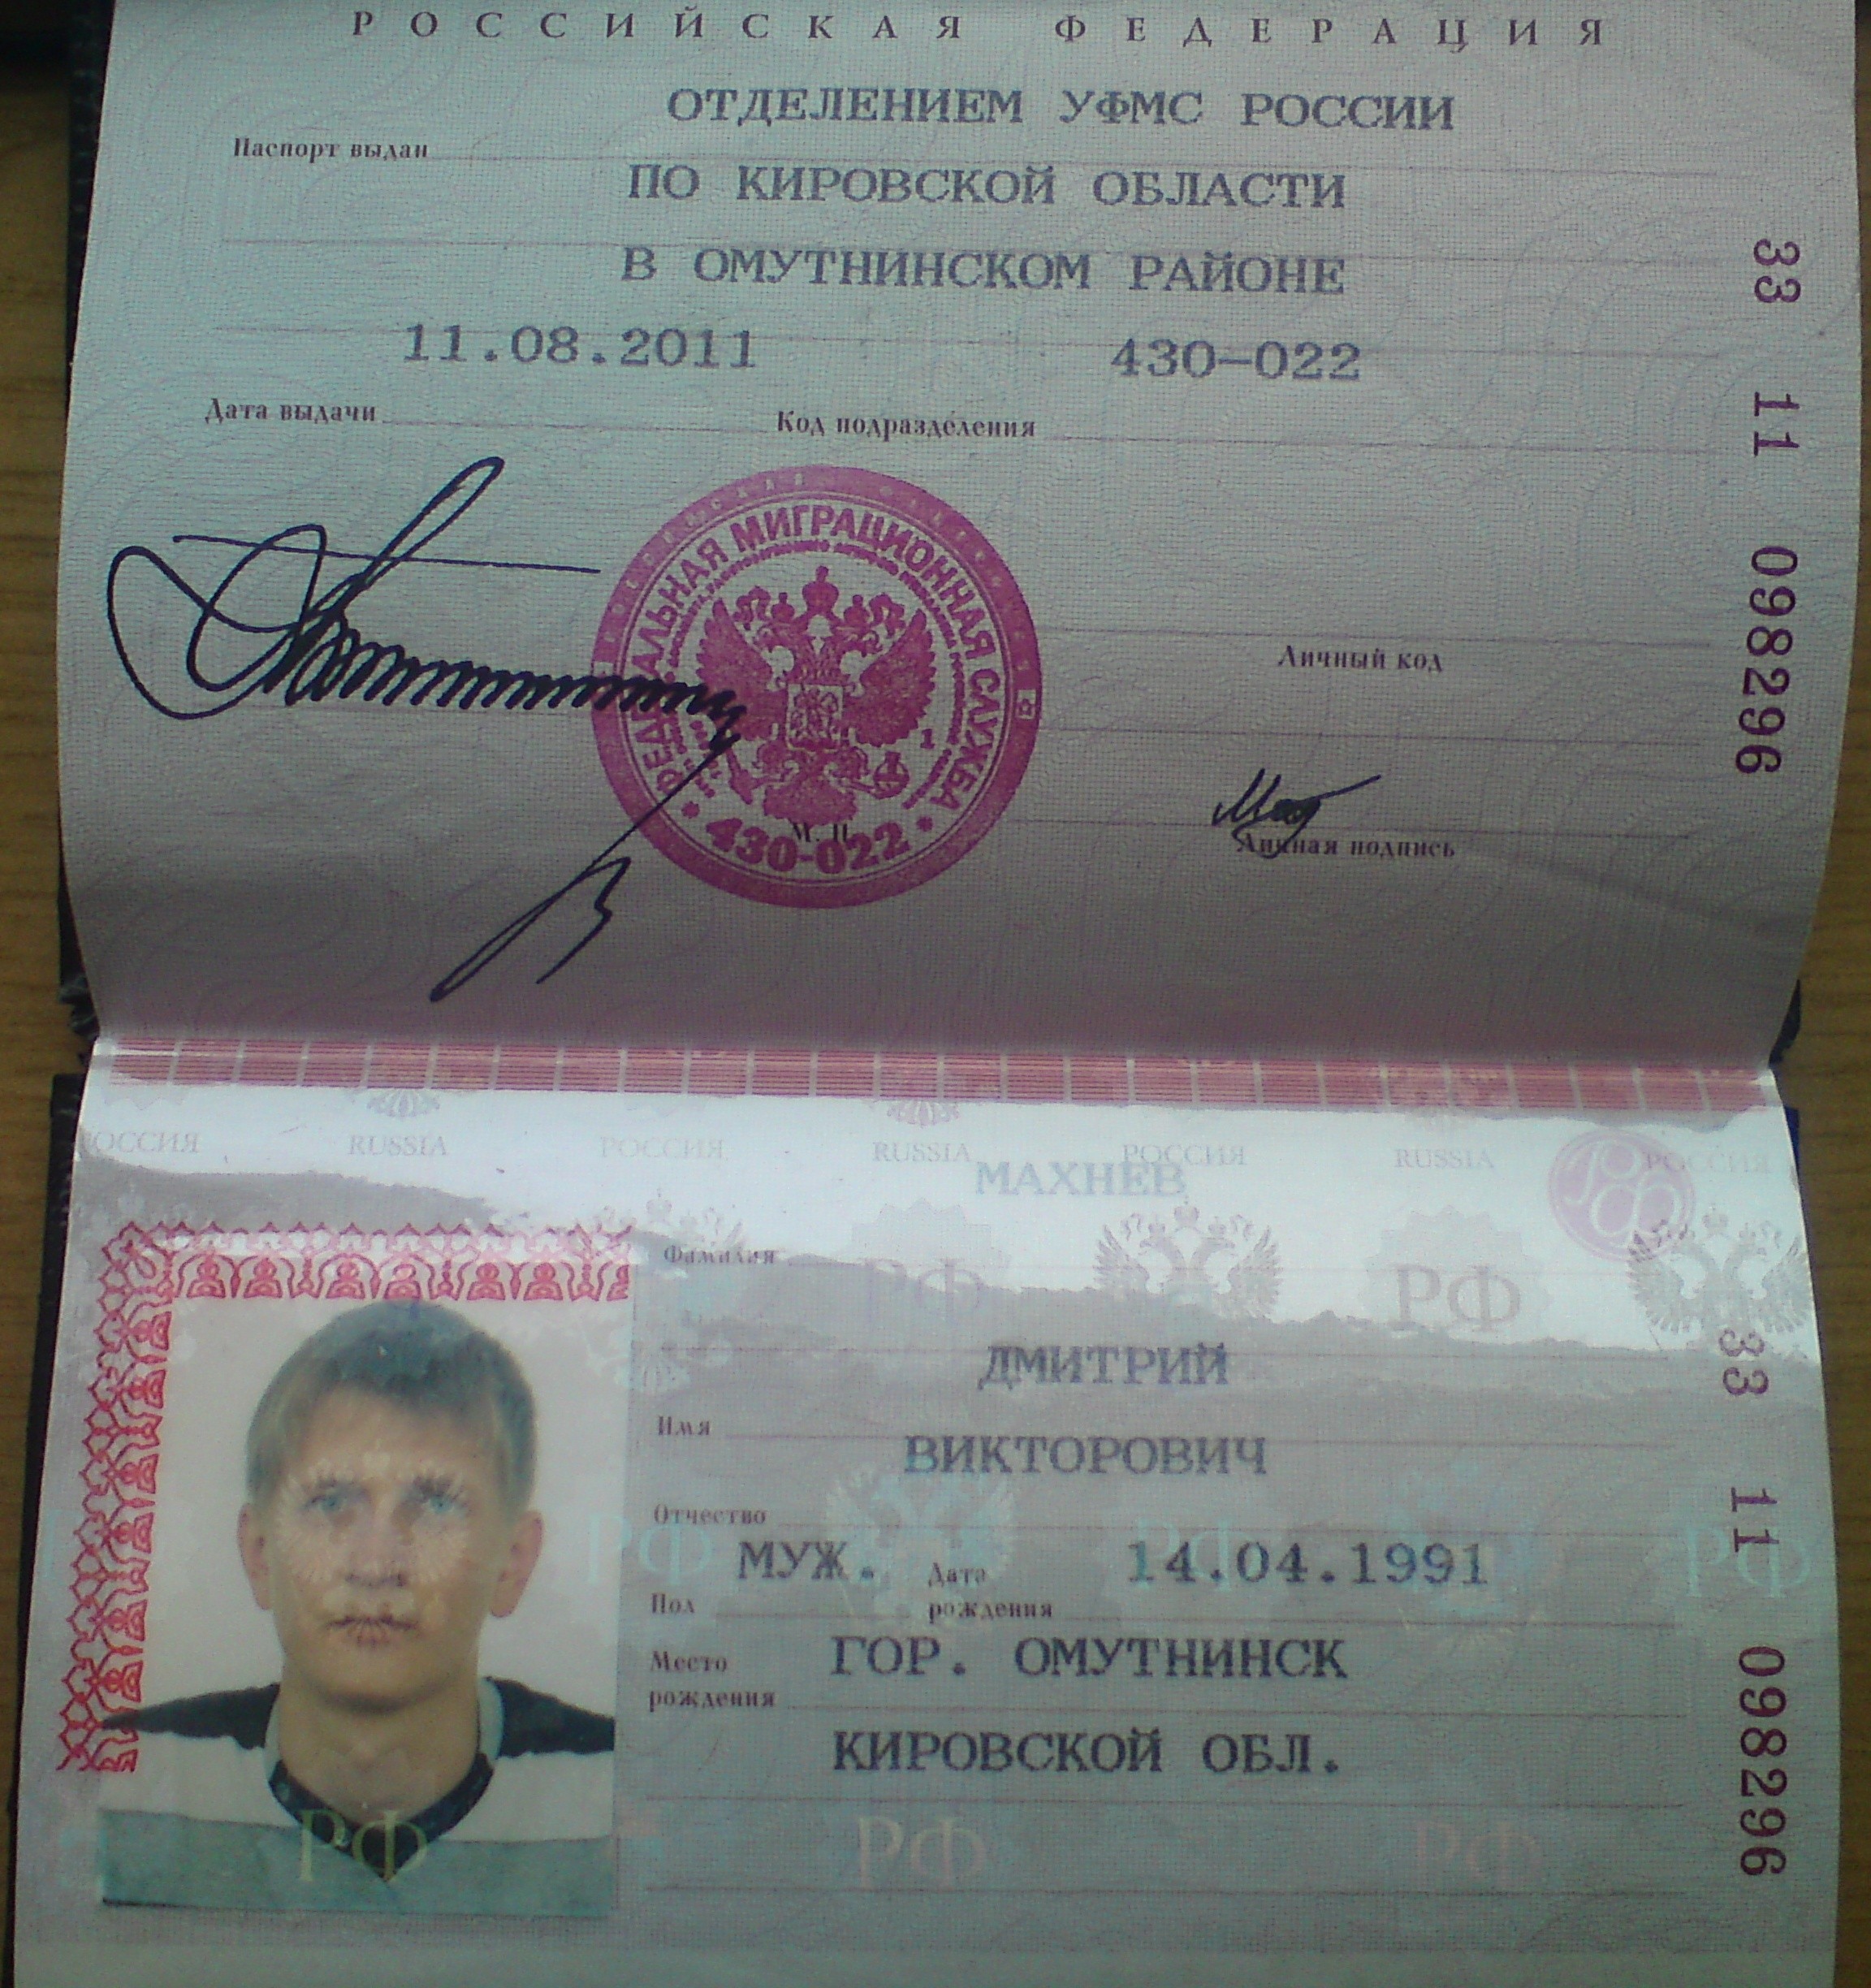 фото паспорта с датой рождения